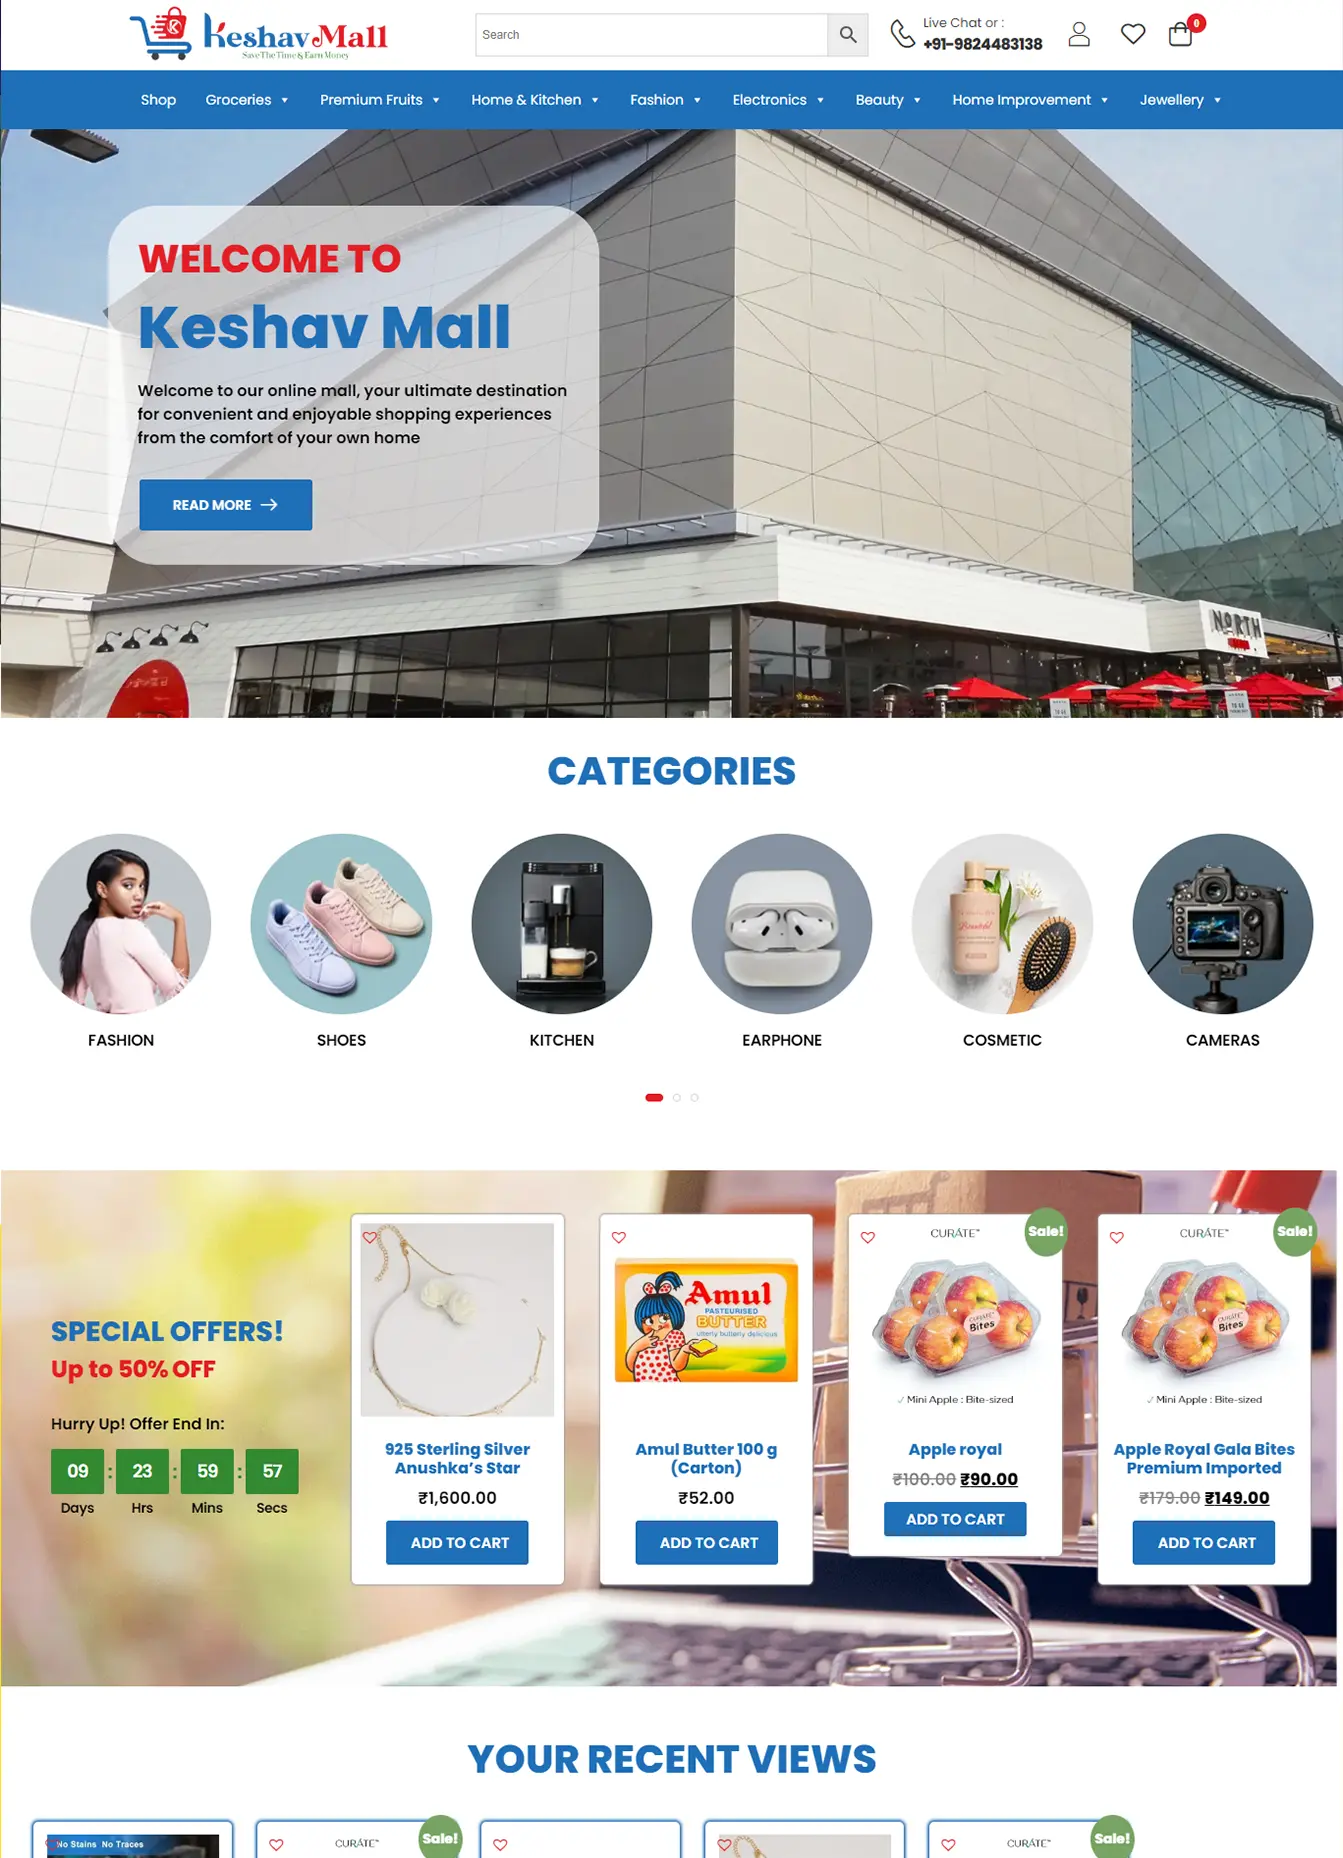 Keshav Mall